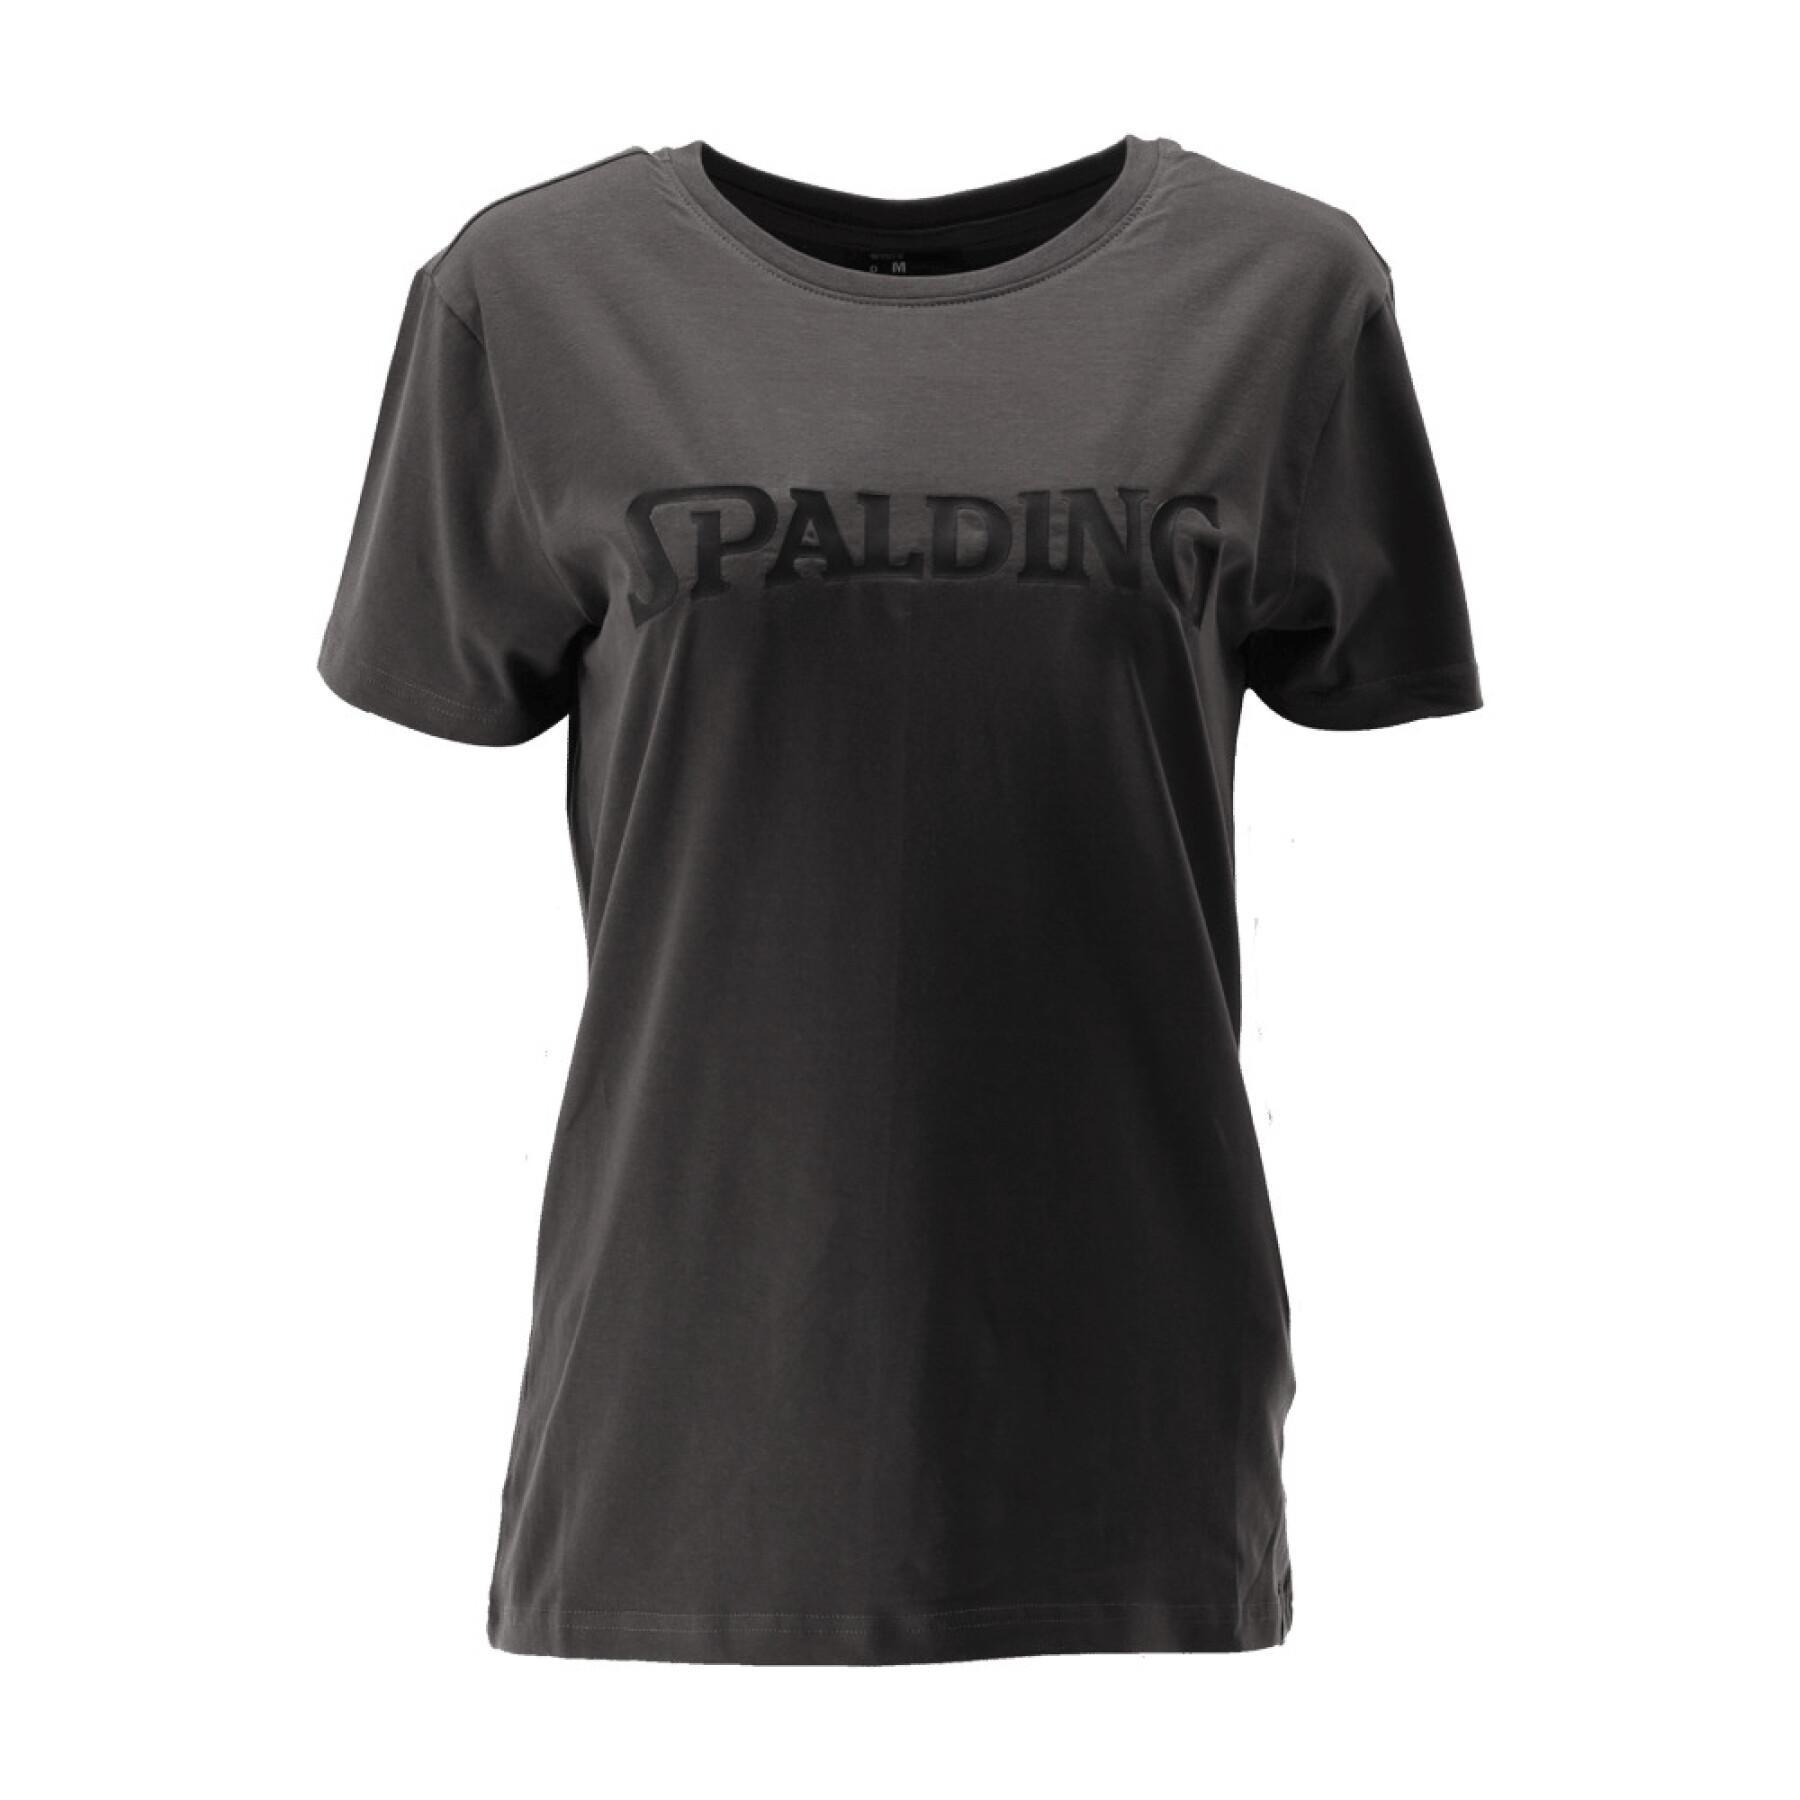 Koszulka damska Spalding Logo